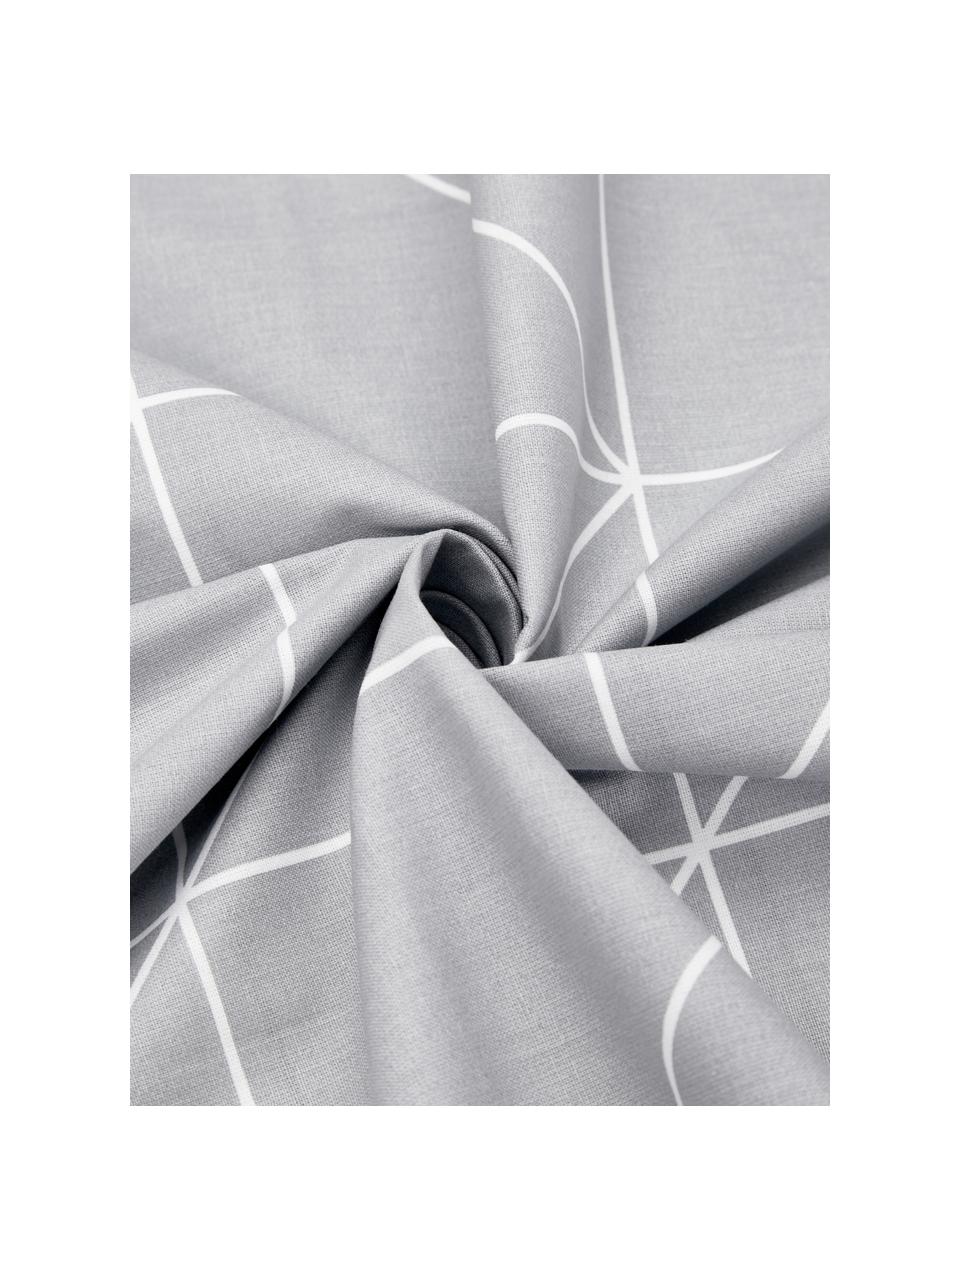 Bavlněné oboustranné povlečení s grafickým vzorem Marla, Světle šedá, bílá, 140 x 200 cm + 1 polštář 80 x 80 cm